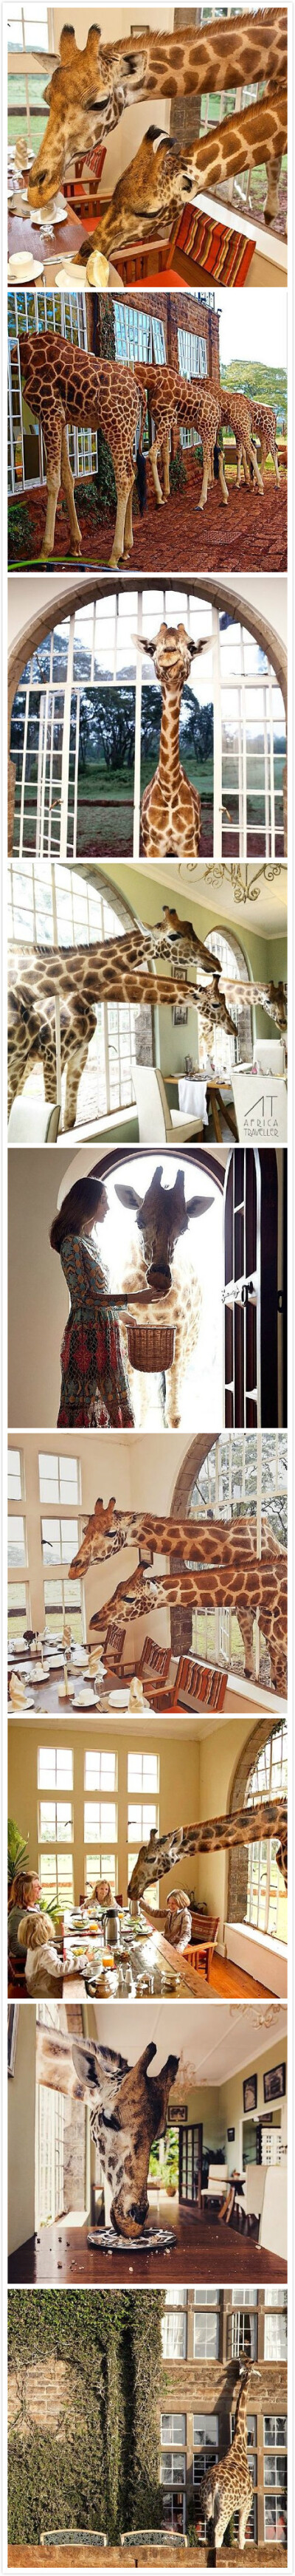 位于肯尼亚内罗毕附近的长颈鹿庄园是世界上唯一一家以长颈鹿为主题的酒店，庄园的主人卡尔哈特雷夫妇以与9只罗特希尔德长颈鹿同住而闻名。每天快到9时的时候，这些长颈鹿就会漫步房前，穿过窗户或者门把脑袋探进房间…